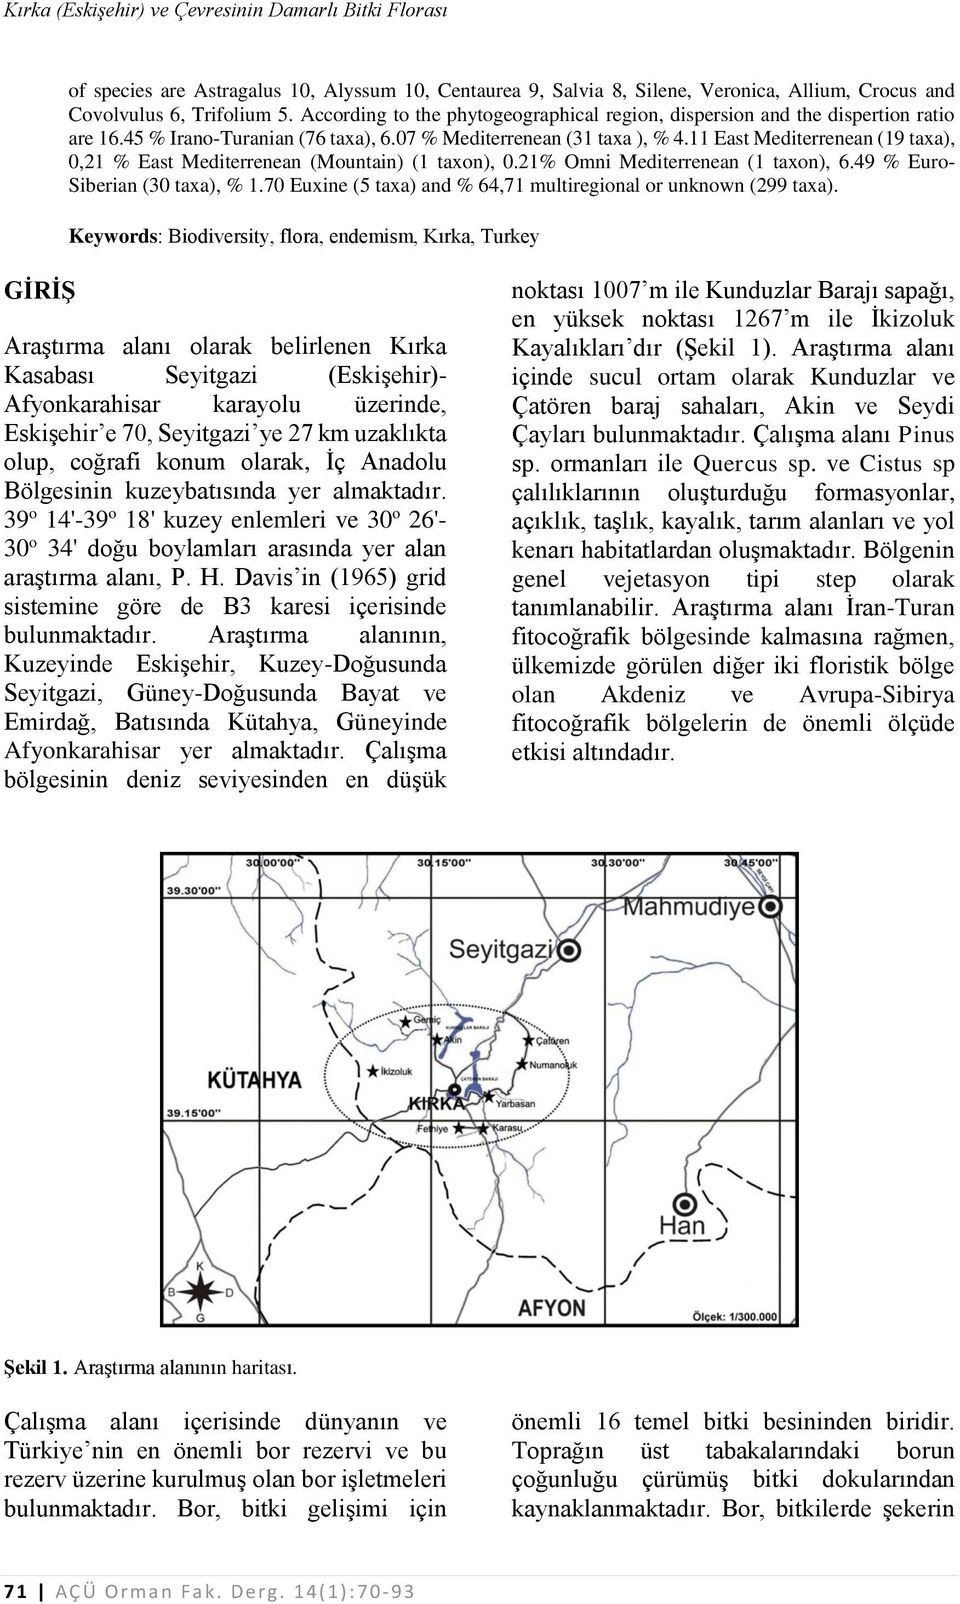 11 East Mediterrenean (19 taxa), 0,21 % East Mediterrenean (Mountain) (1 taxon), 0.21% Omni Mediterrenean (1 taxon), 6.49 % Euro- Siberian (30 taxa), % 1.